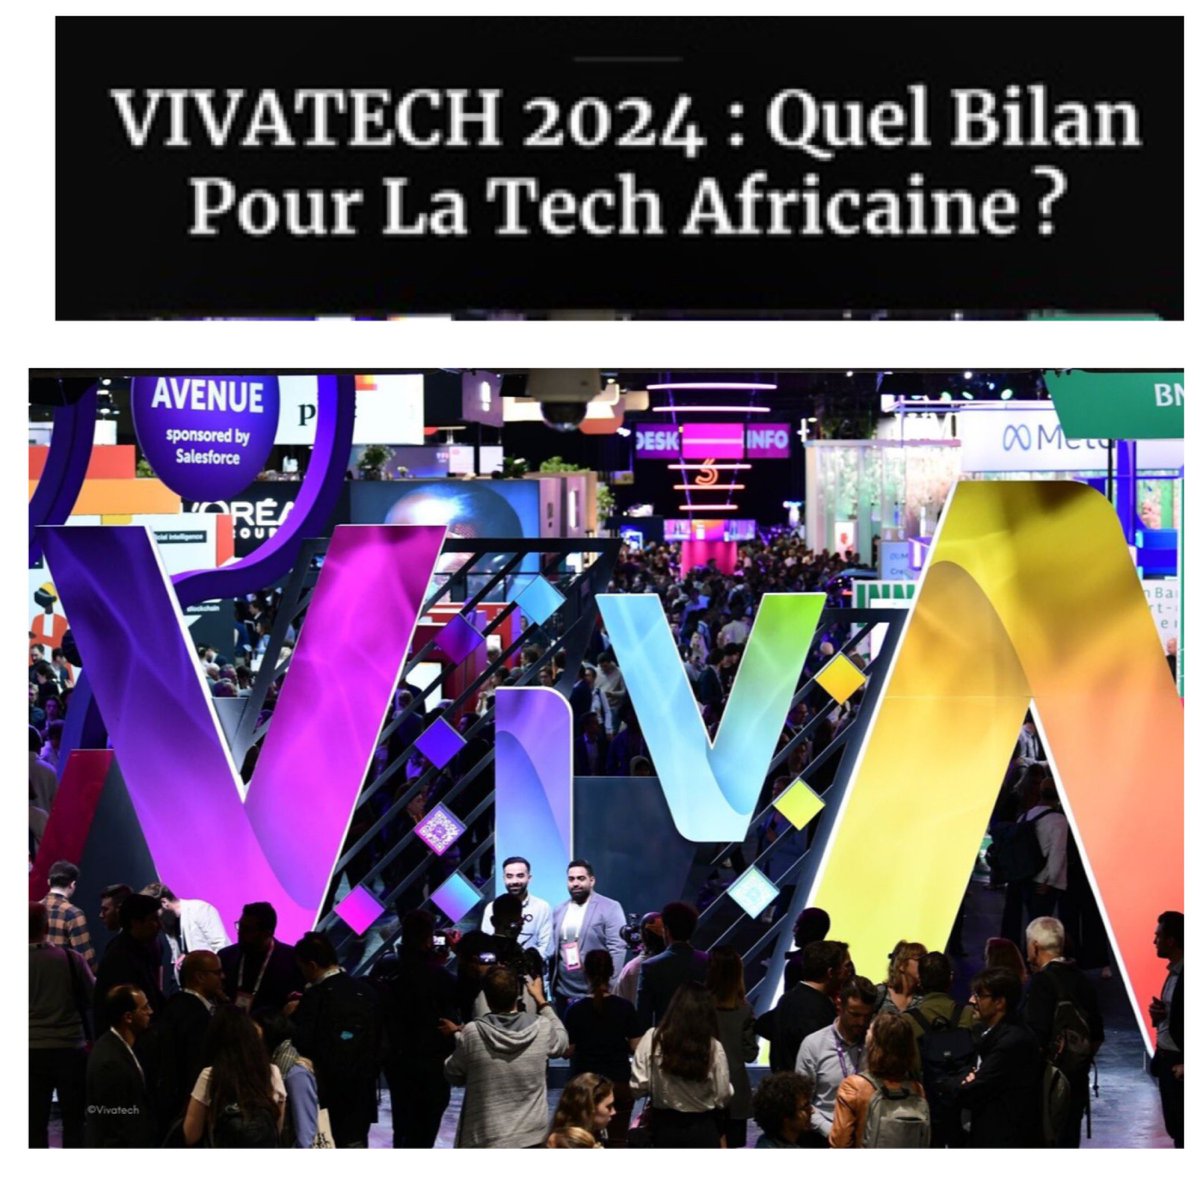 Le salon VIVA TECHNOLOGY a refermé ses portes sur une édition consacrée à l’intelligence artificielle (IA), où l’Afrique était faiblement représentée. Voici ce qu’il faut retenir de cette 8e édition
@Club_Efficience 
Lire : forbesafrique.com/vivatech-2024-…